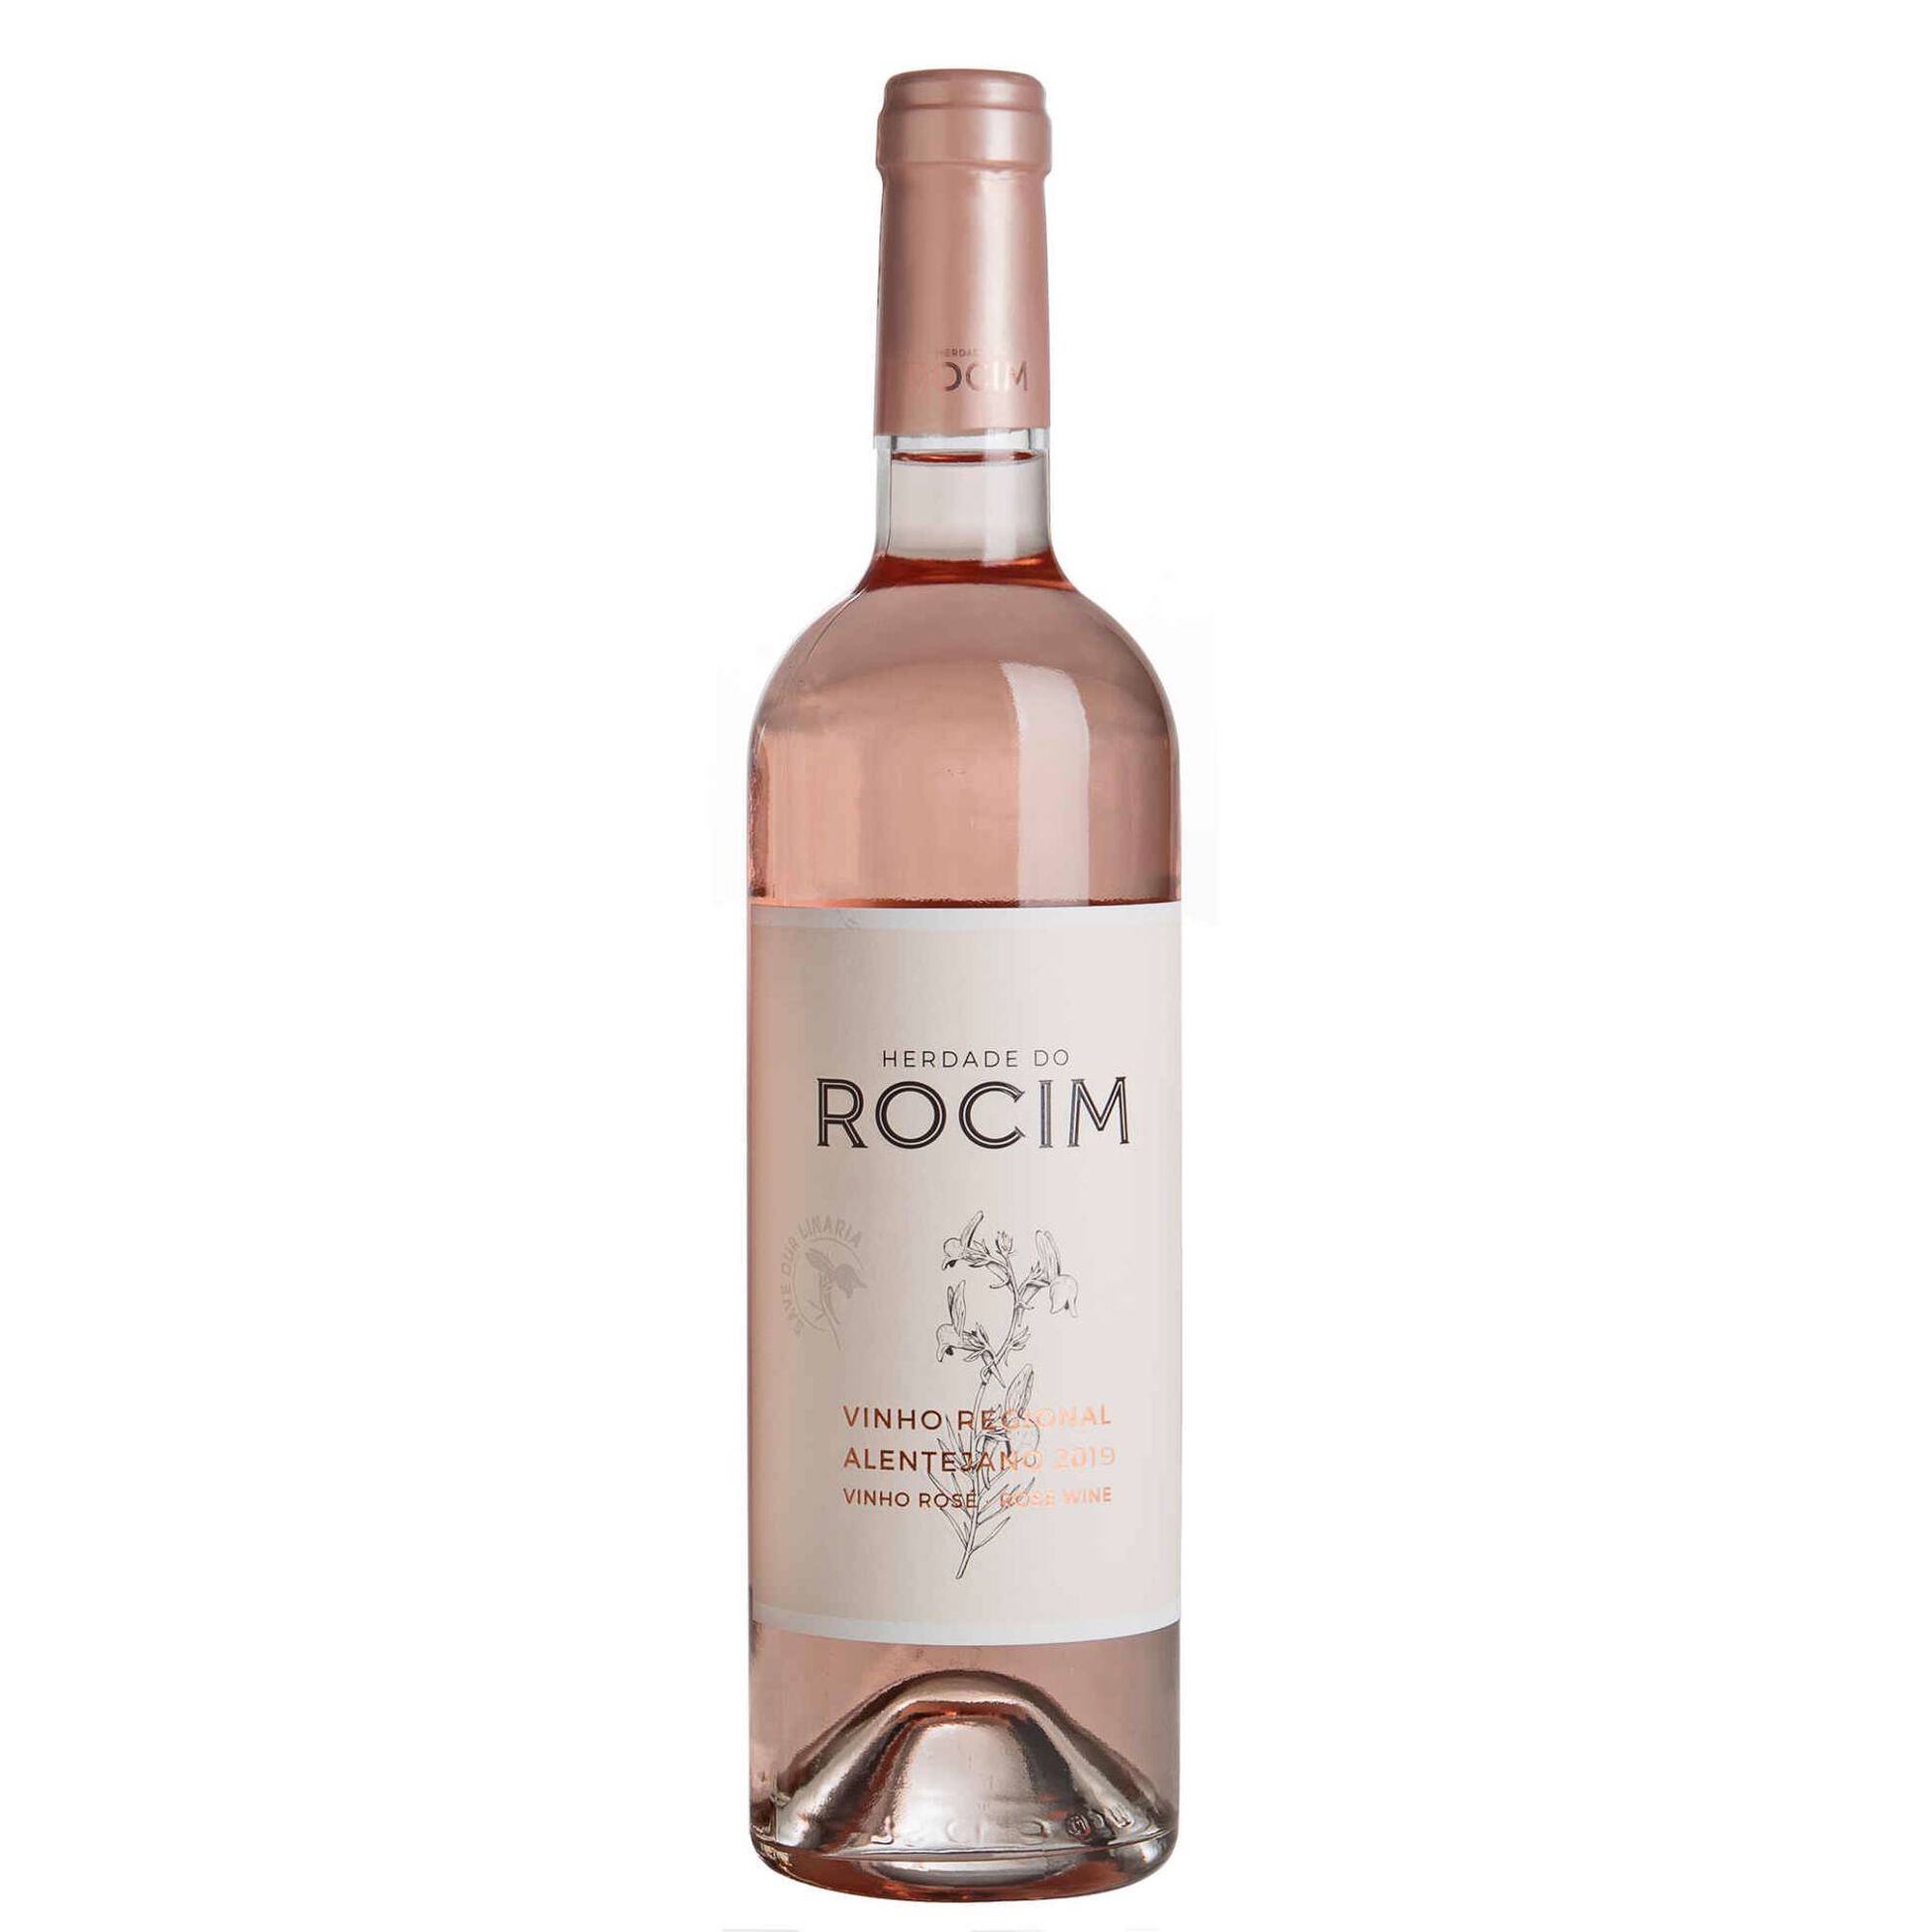 Herdade do Rocim Regional Alentejano Vinho Rosé